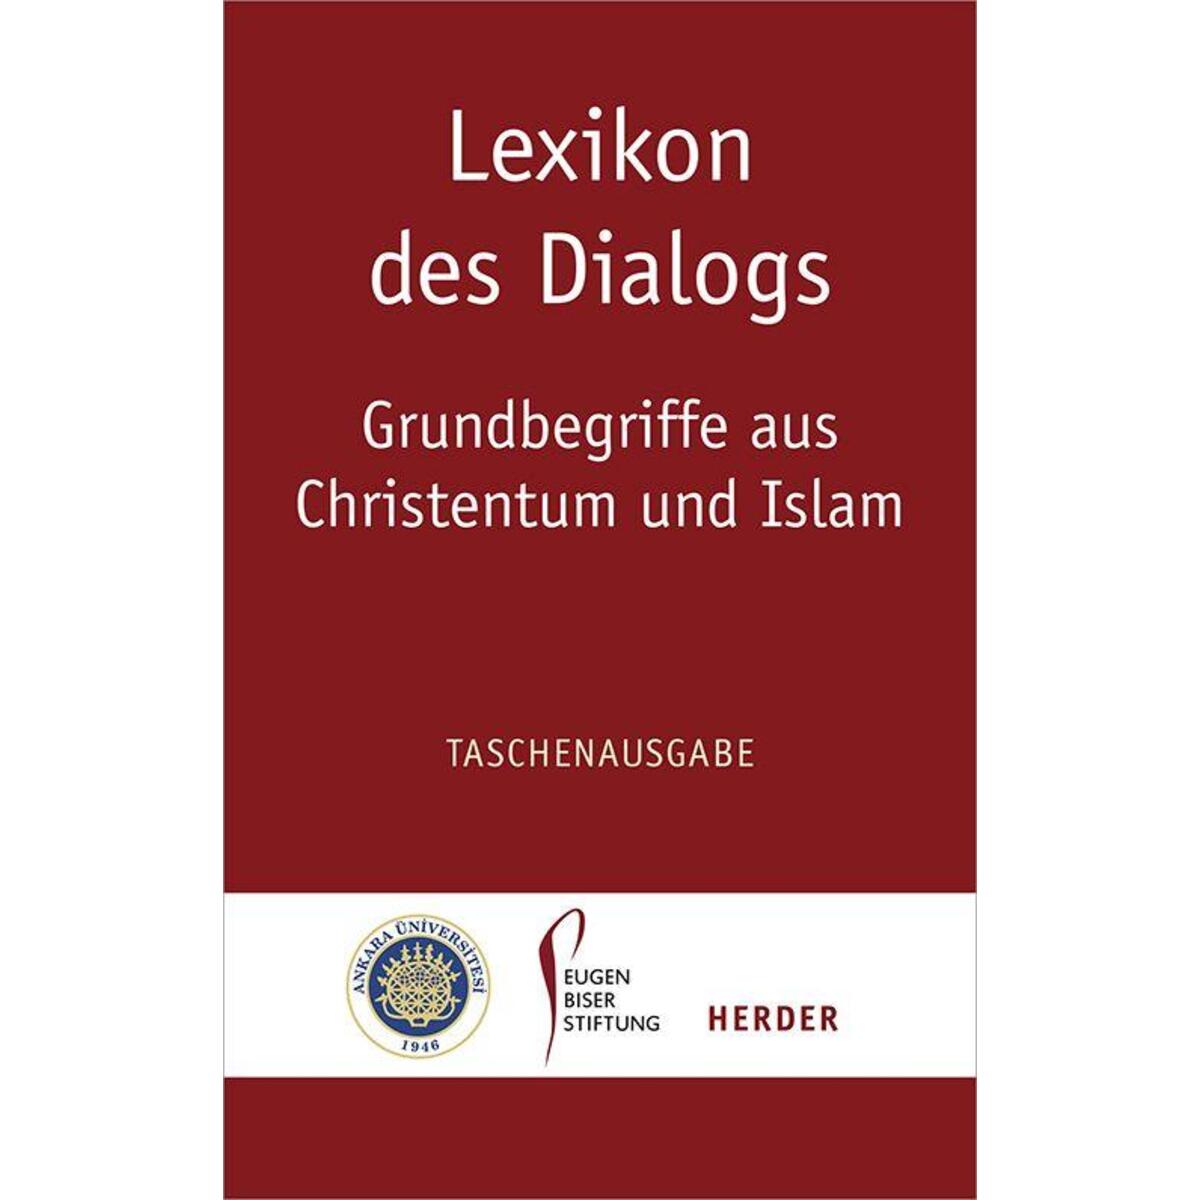 Lexikon des Dialogs - Grundbegriffe aus Christentum und Islam von Herder Verlag GmbH